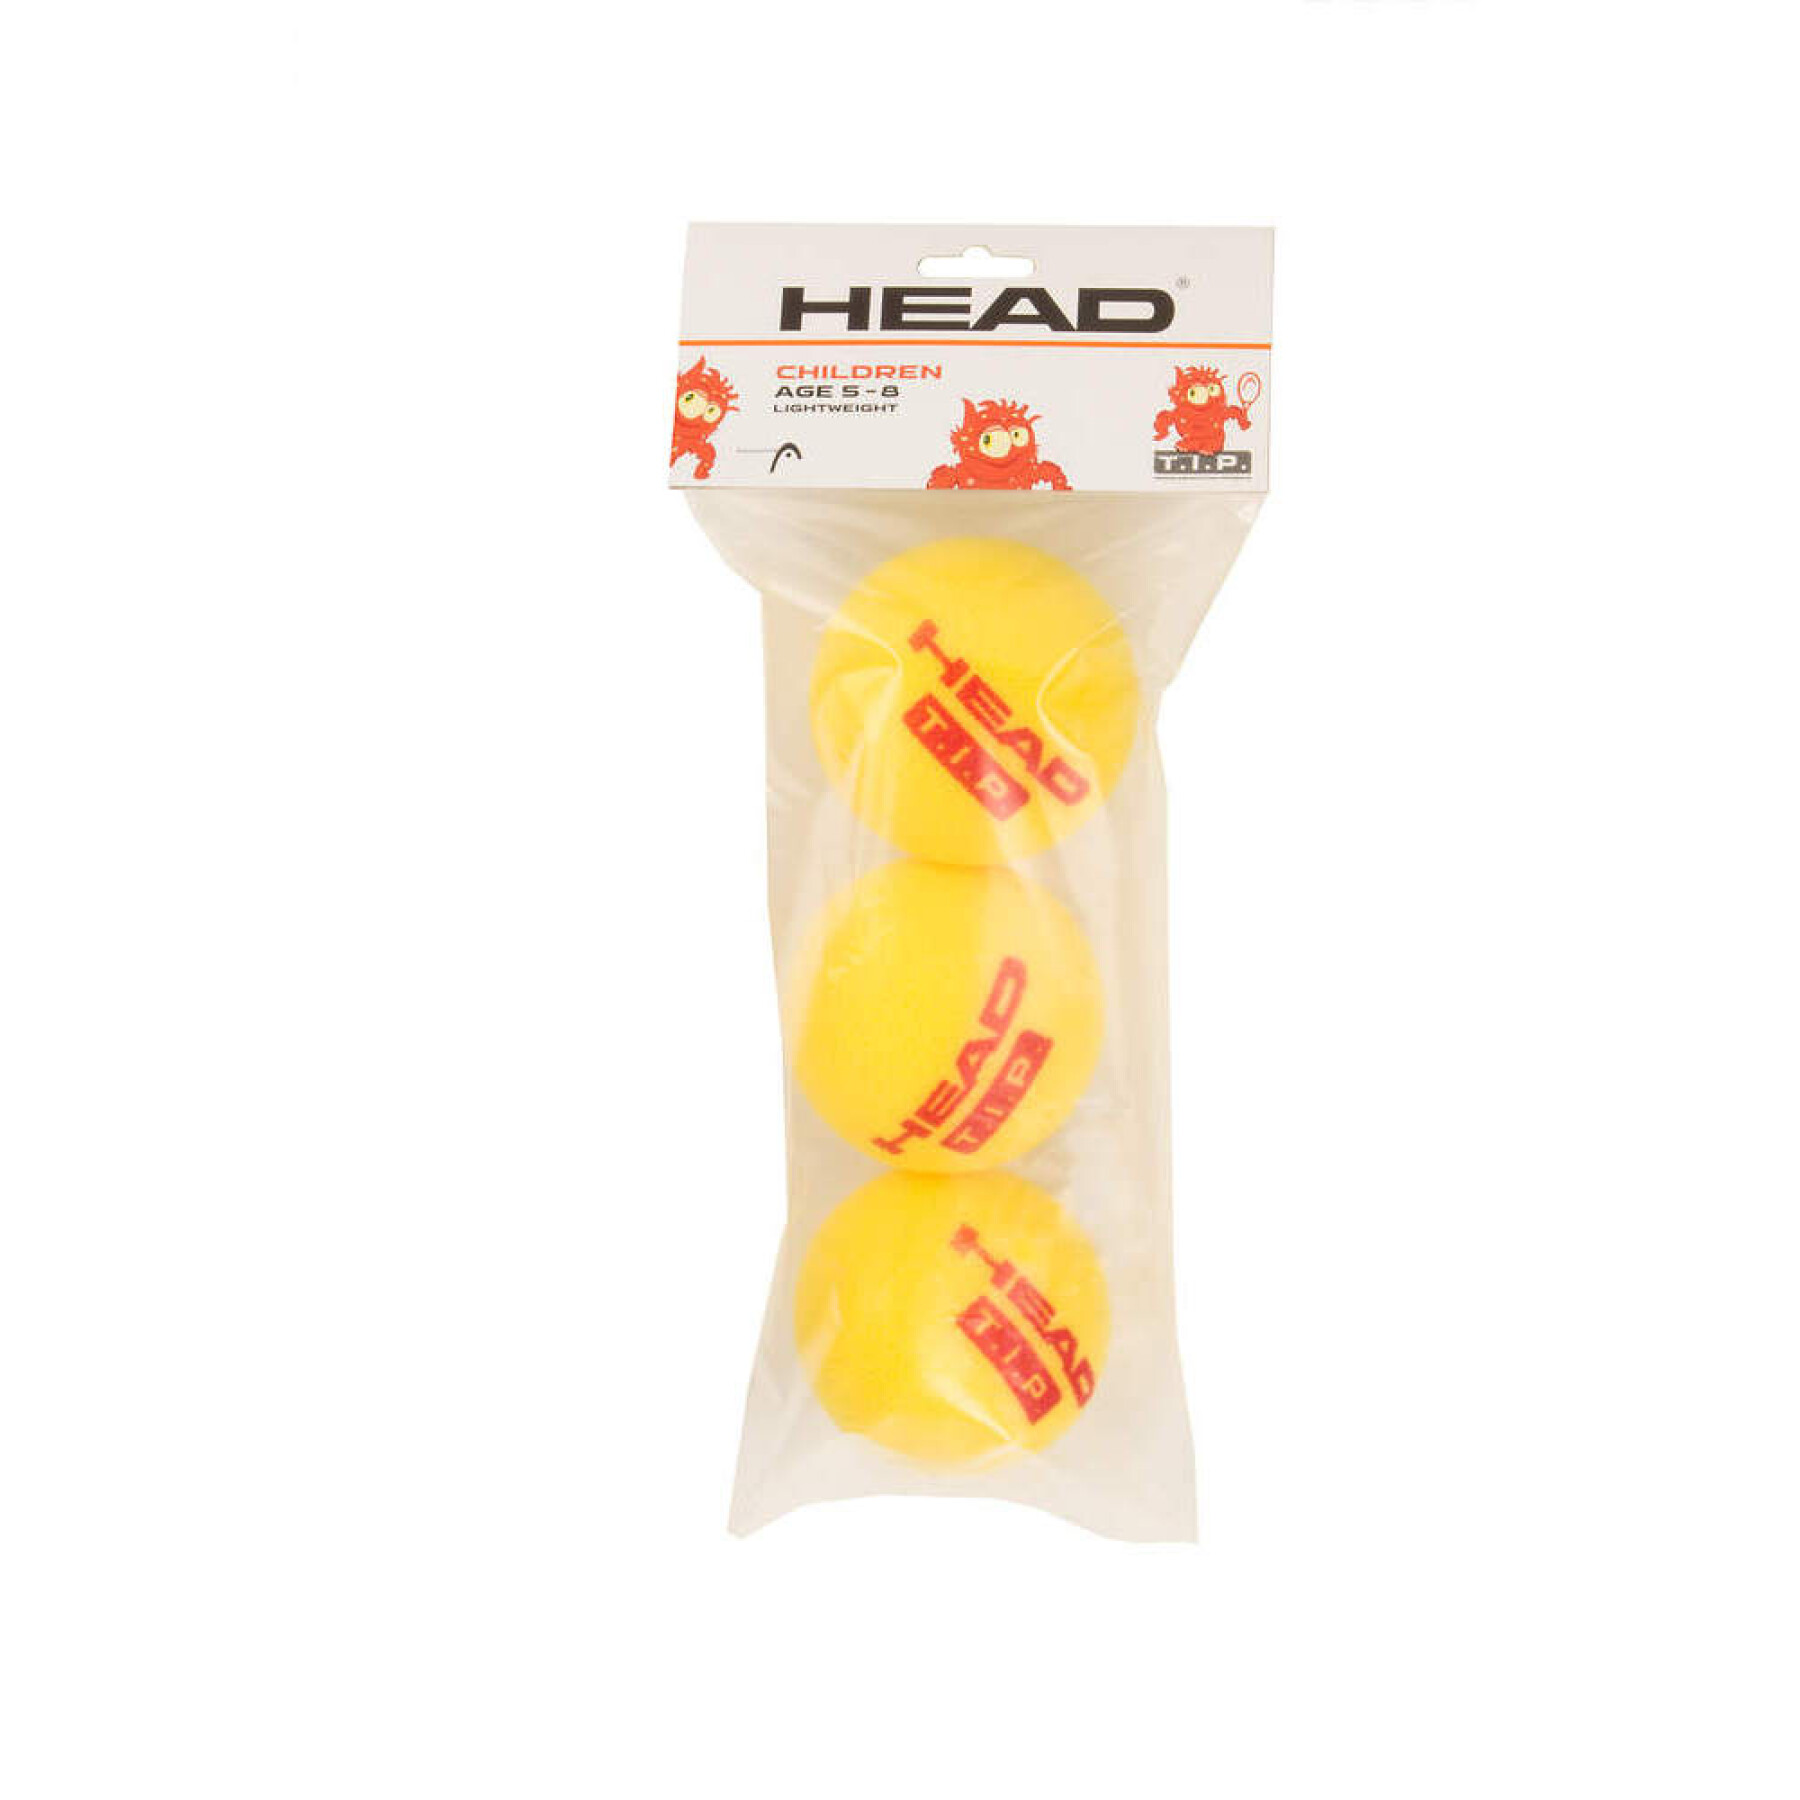 Tennisball aus Leichtschaumstoff Kind Head T.I.P (x3)